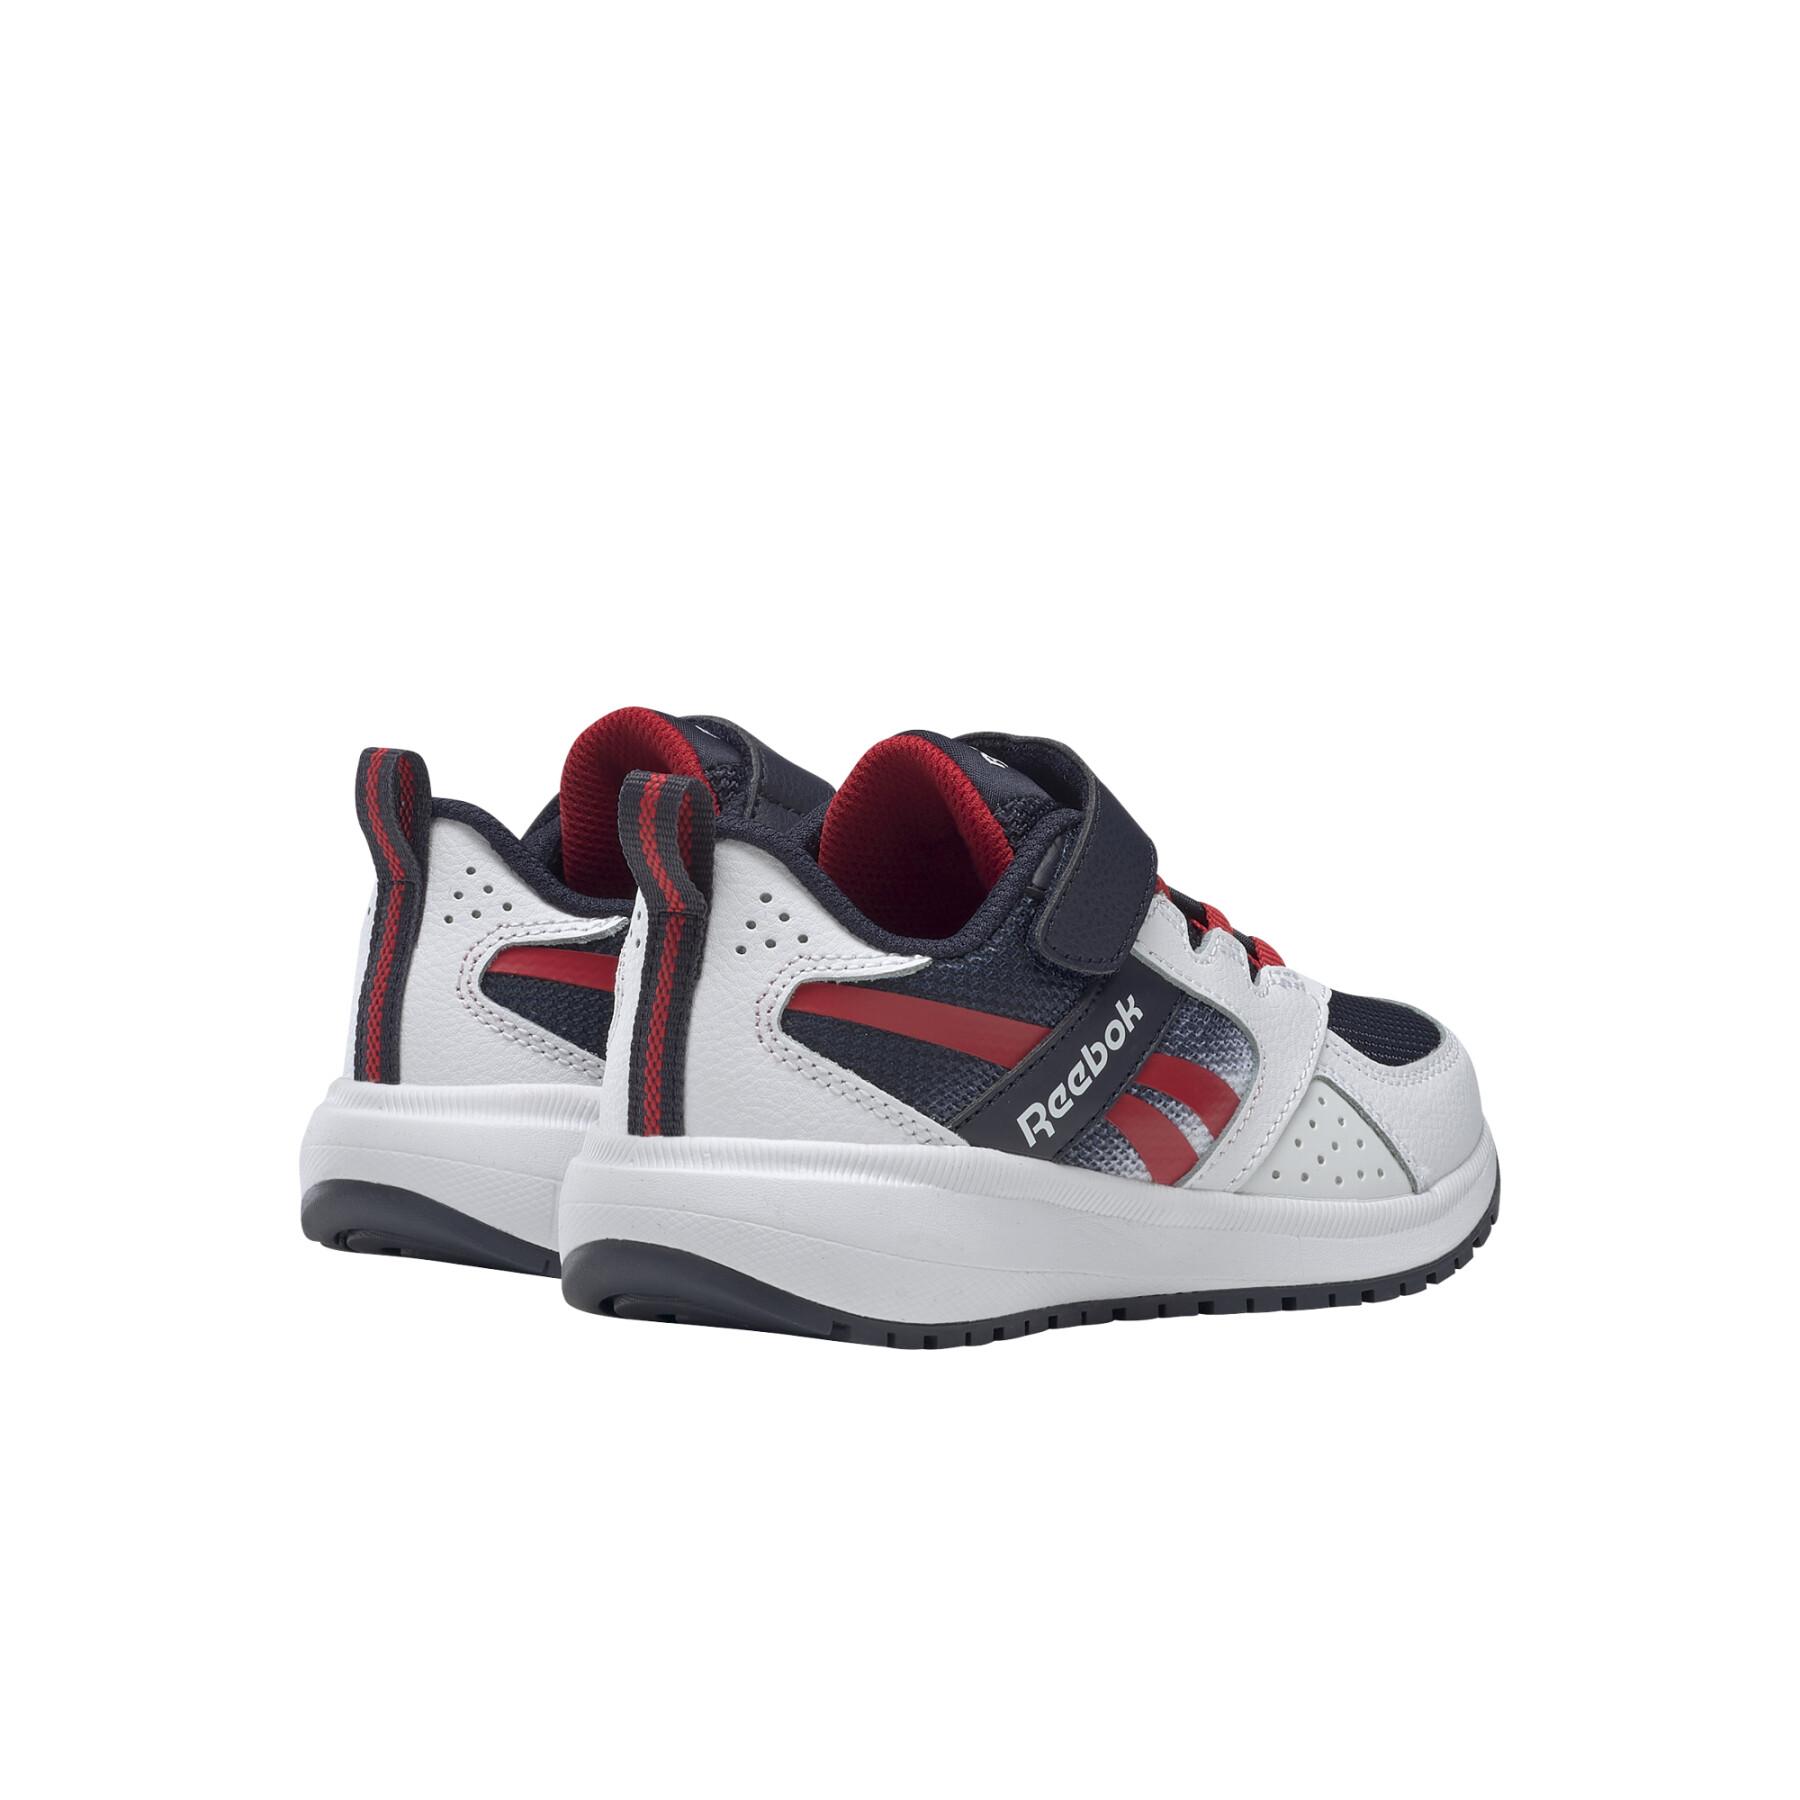 Chaussures de running enfant Reebok Road Supreme 2 Alt